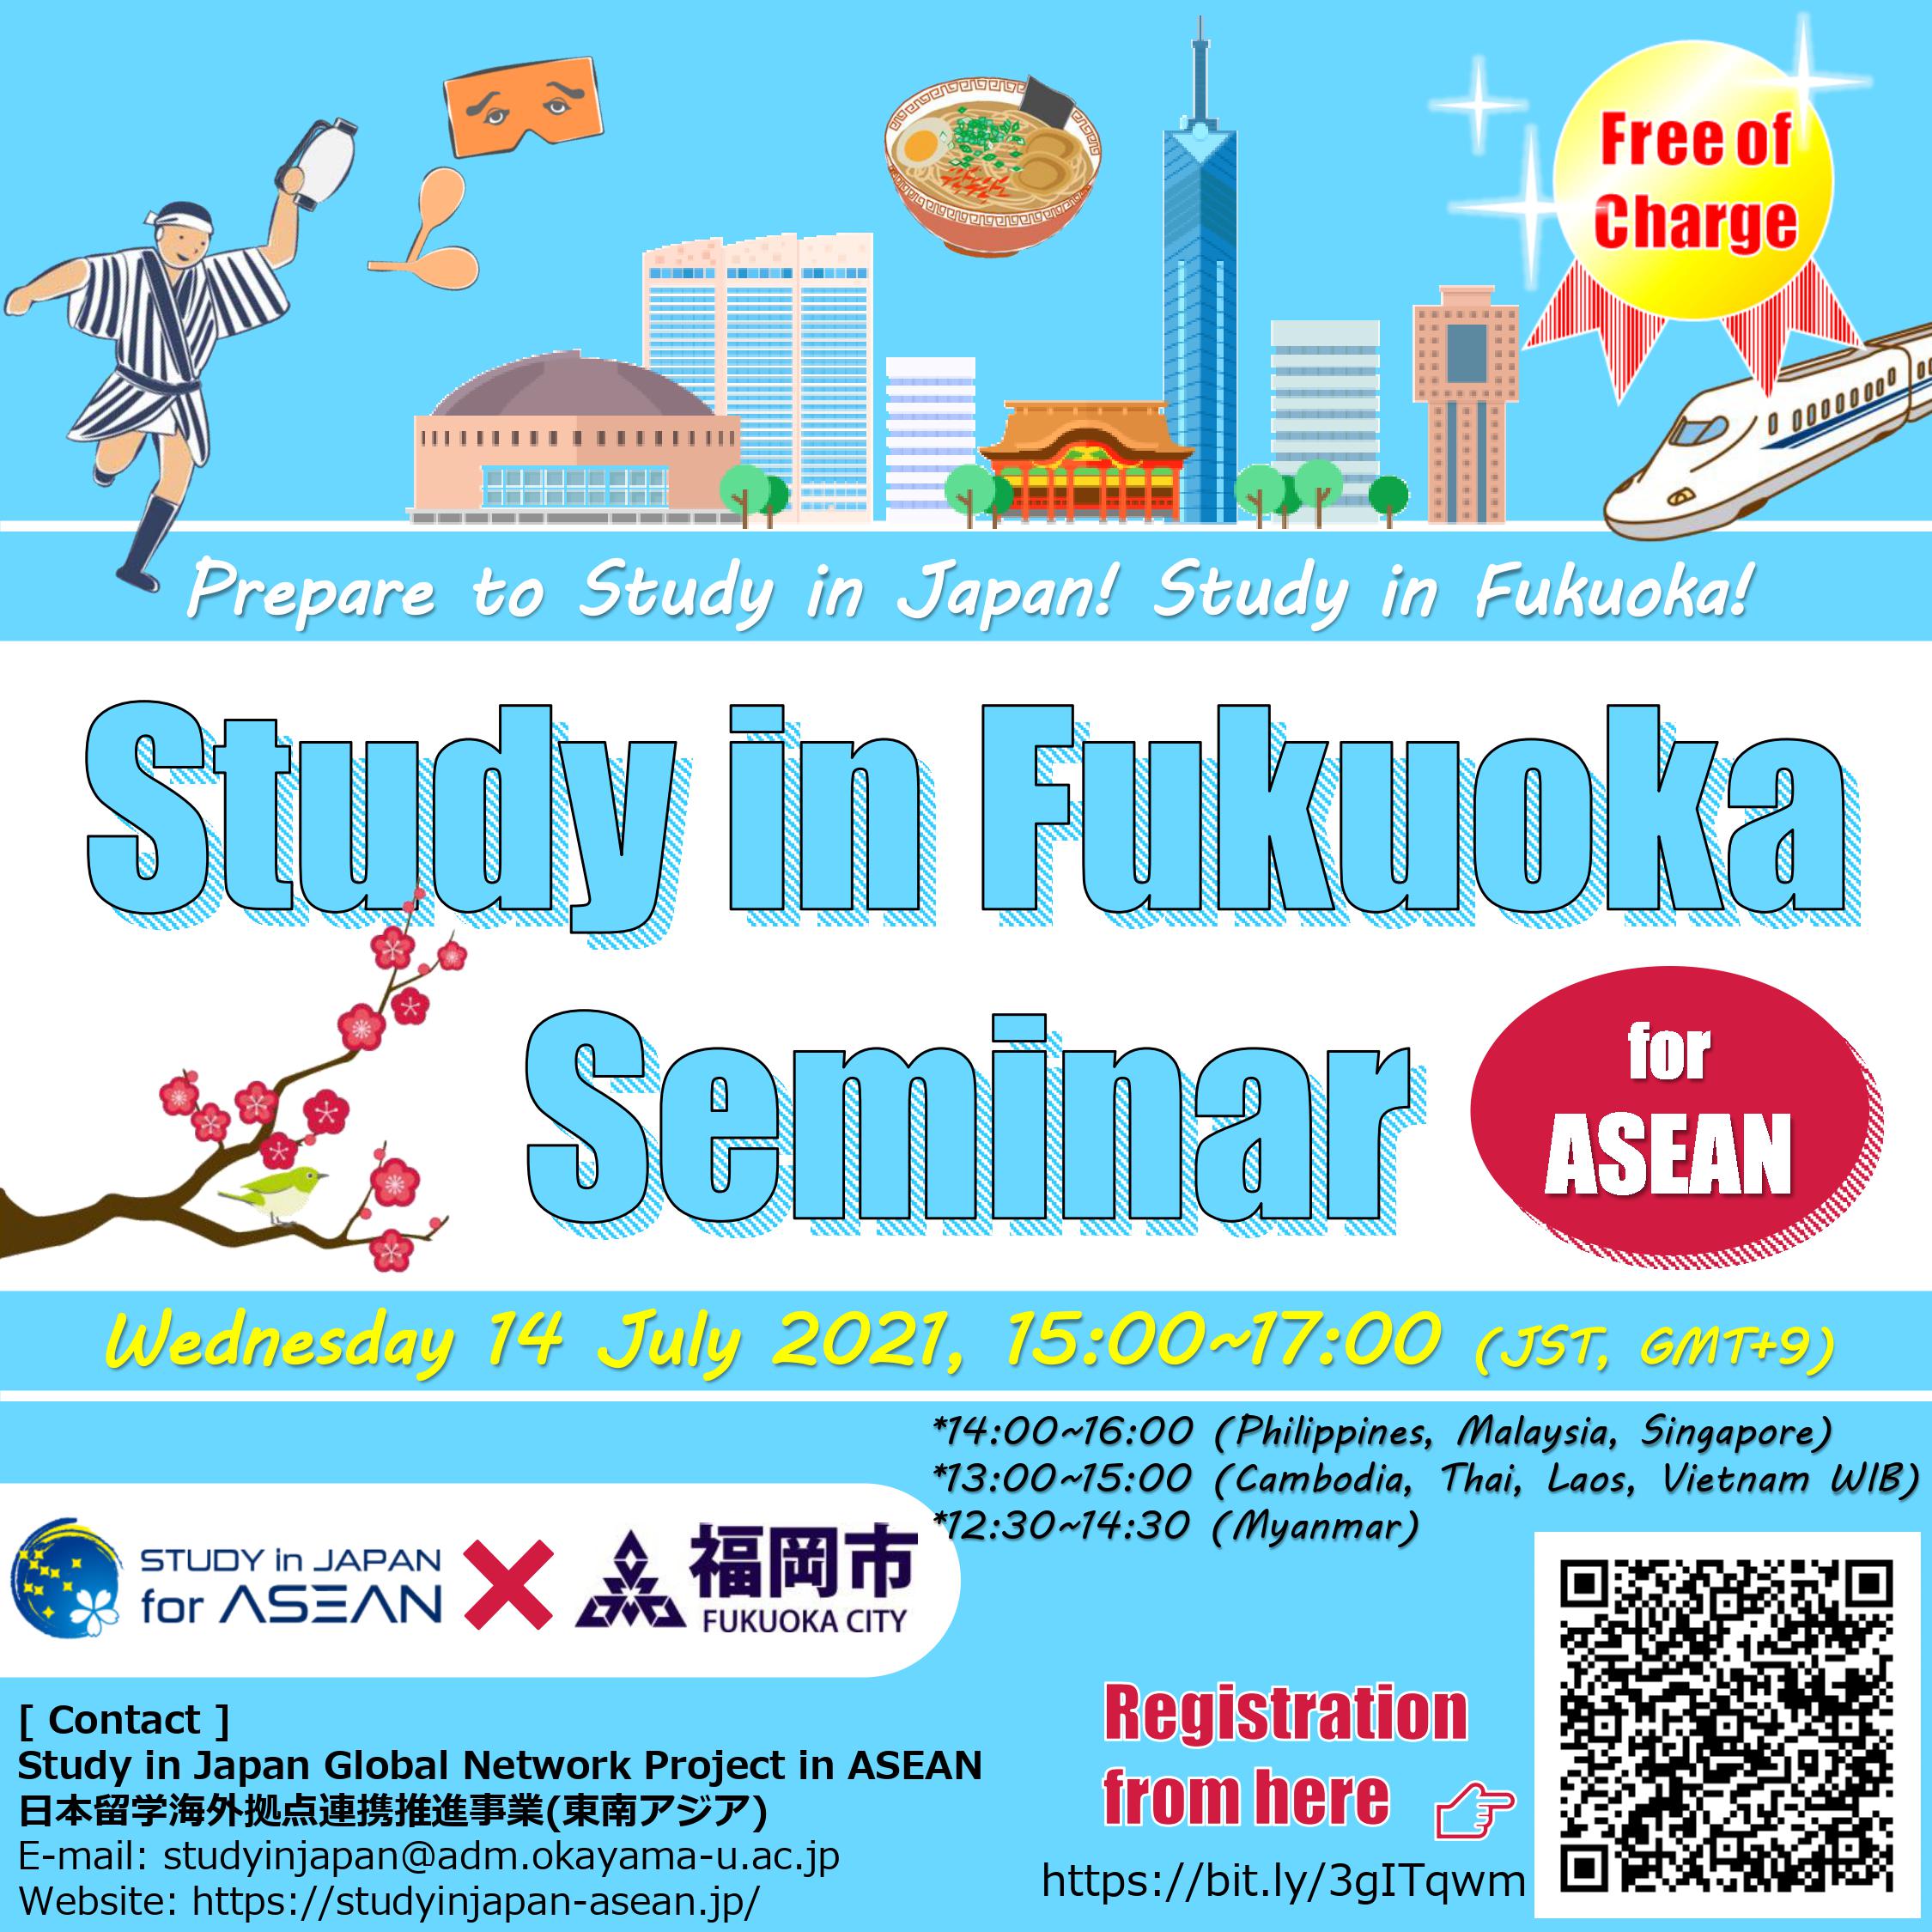 Prepare to Study in Japan! Study in Fukuoka! Study in Fukuoka Seminar for ASEAN